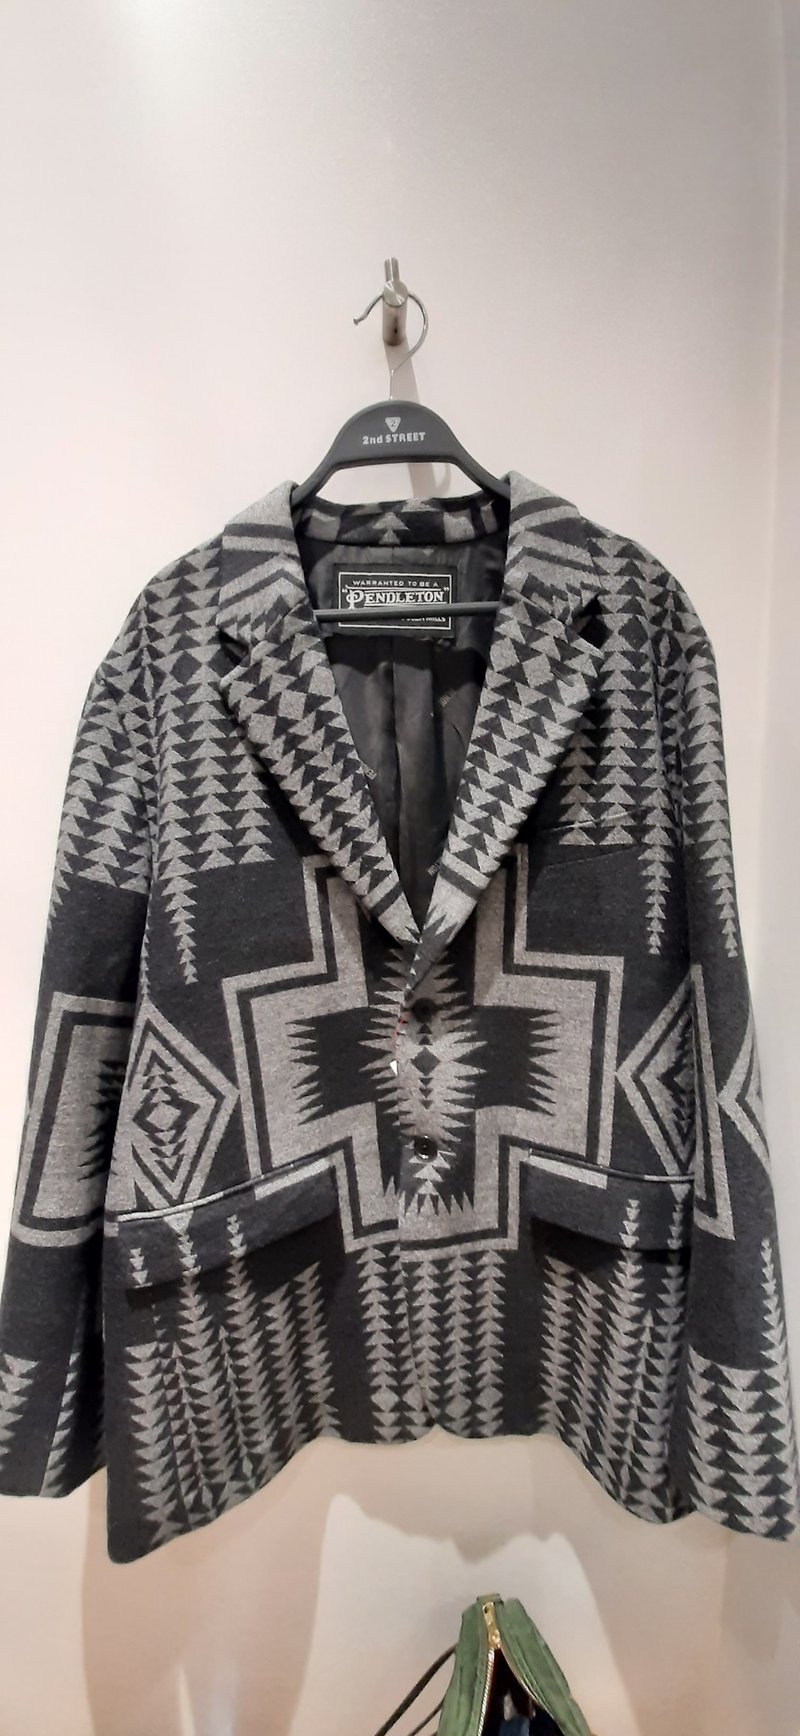 日本制pendleton印地安羊毛休闲外套 限定选物 - 男装西装外套 - 羊毛 灰色